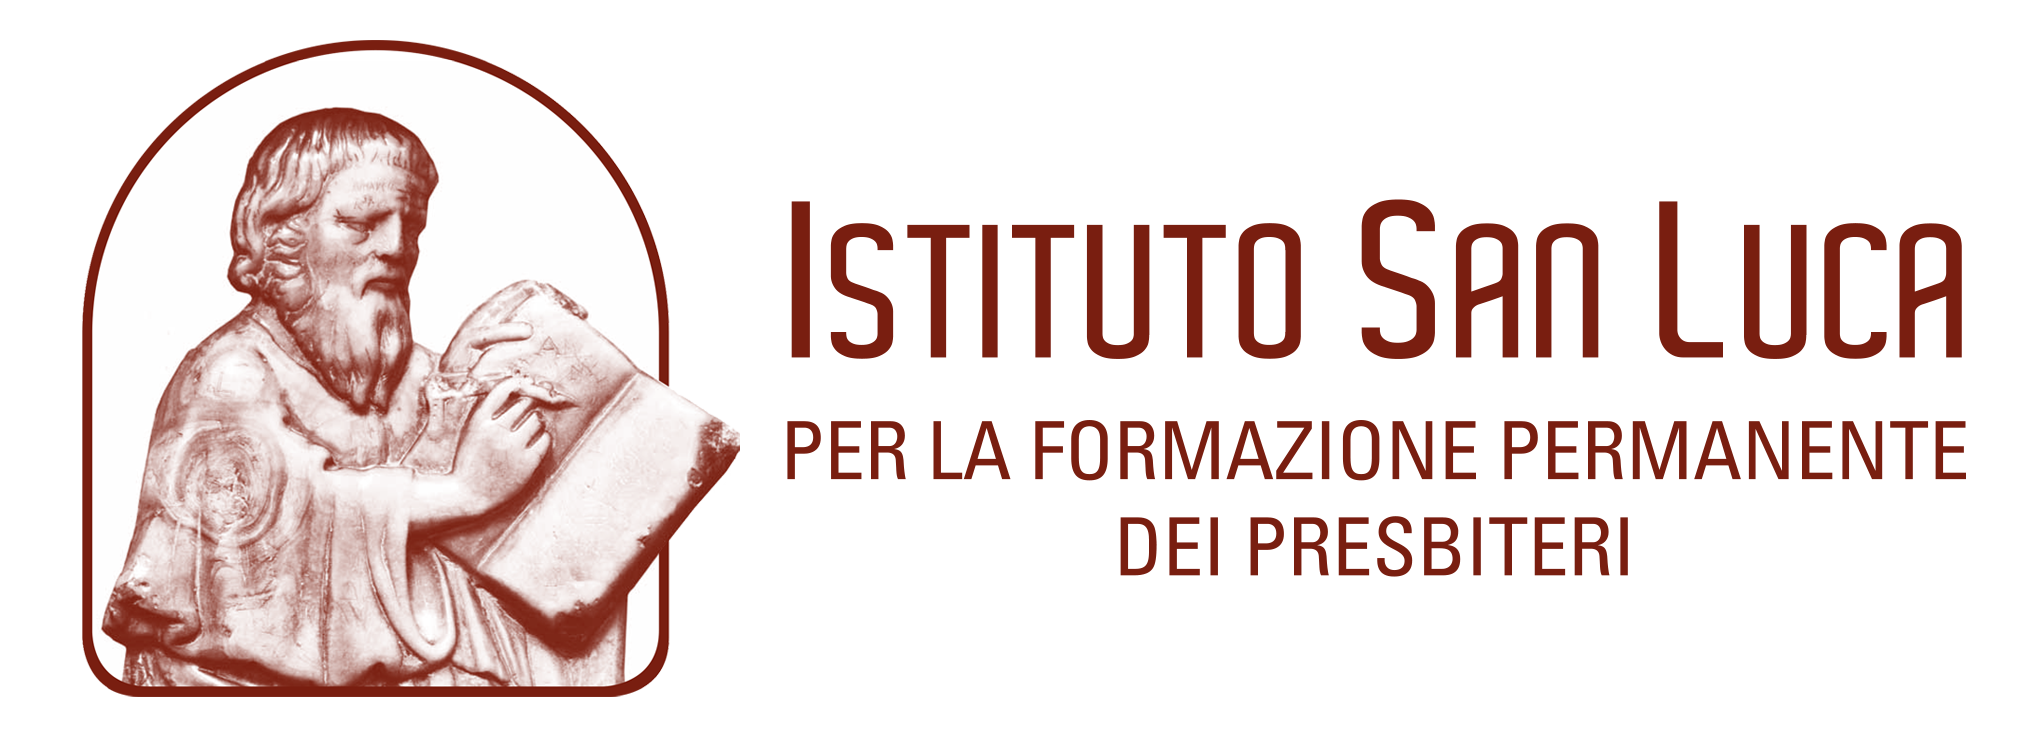 Istituto San Luca"